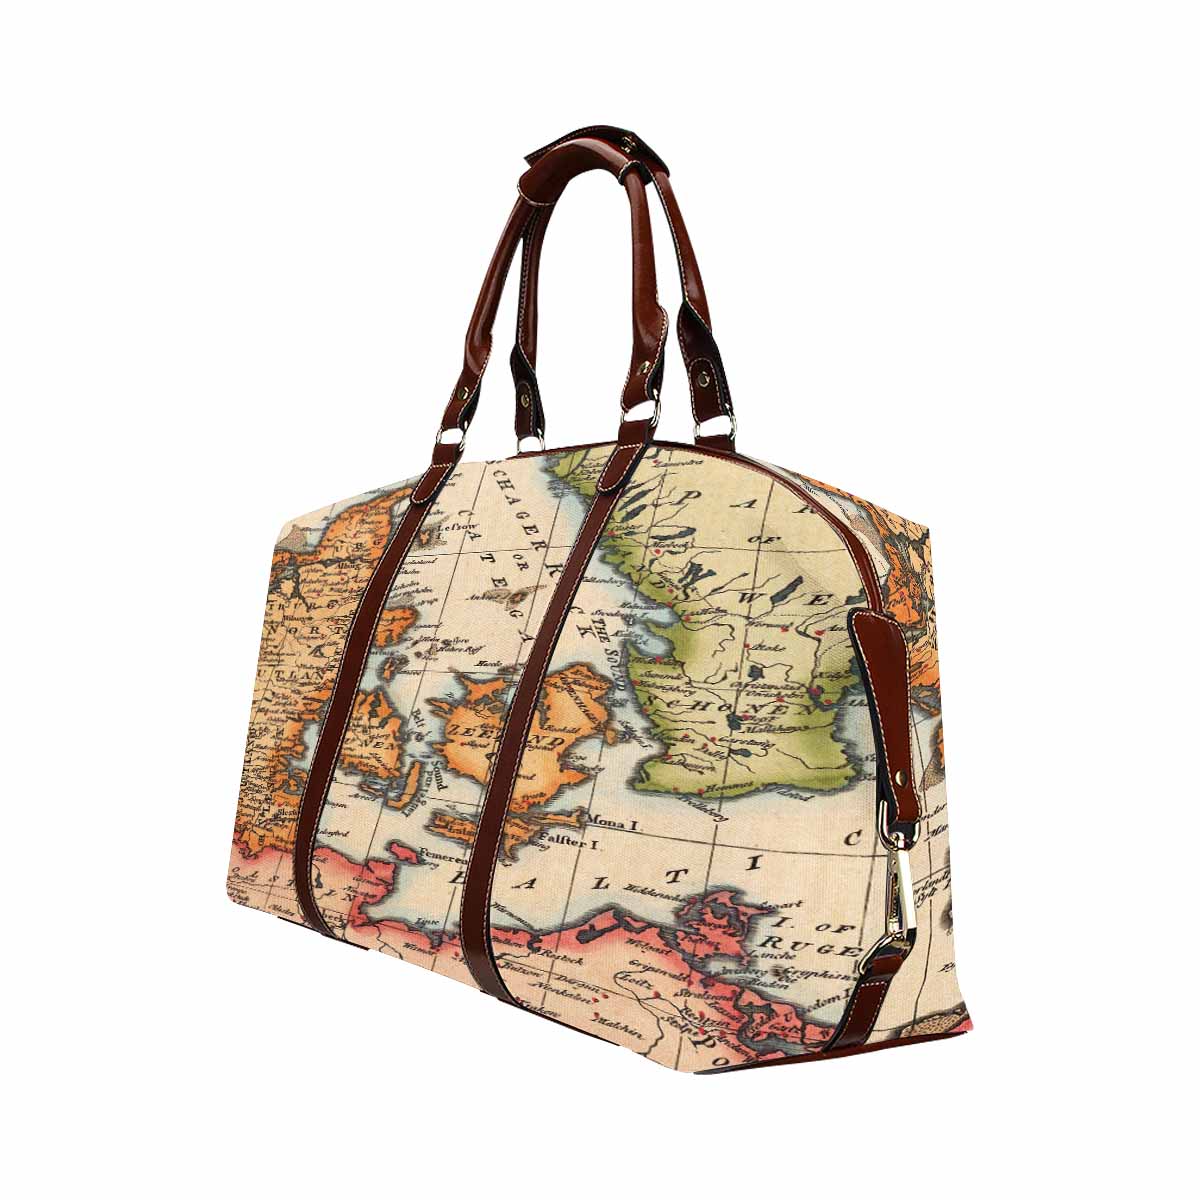 Antique Map design travel bag, Model 1695343, Design 34